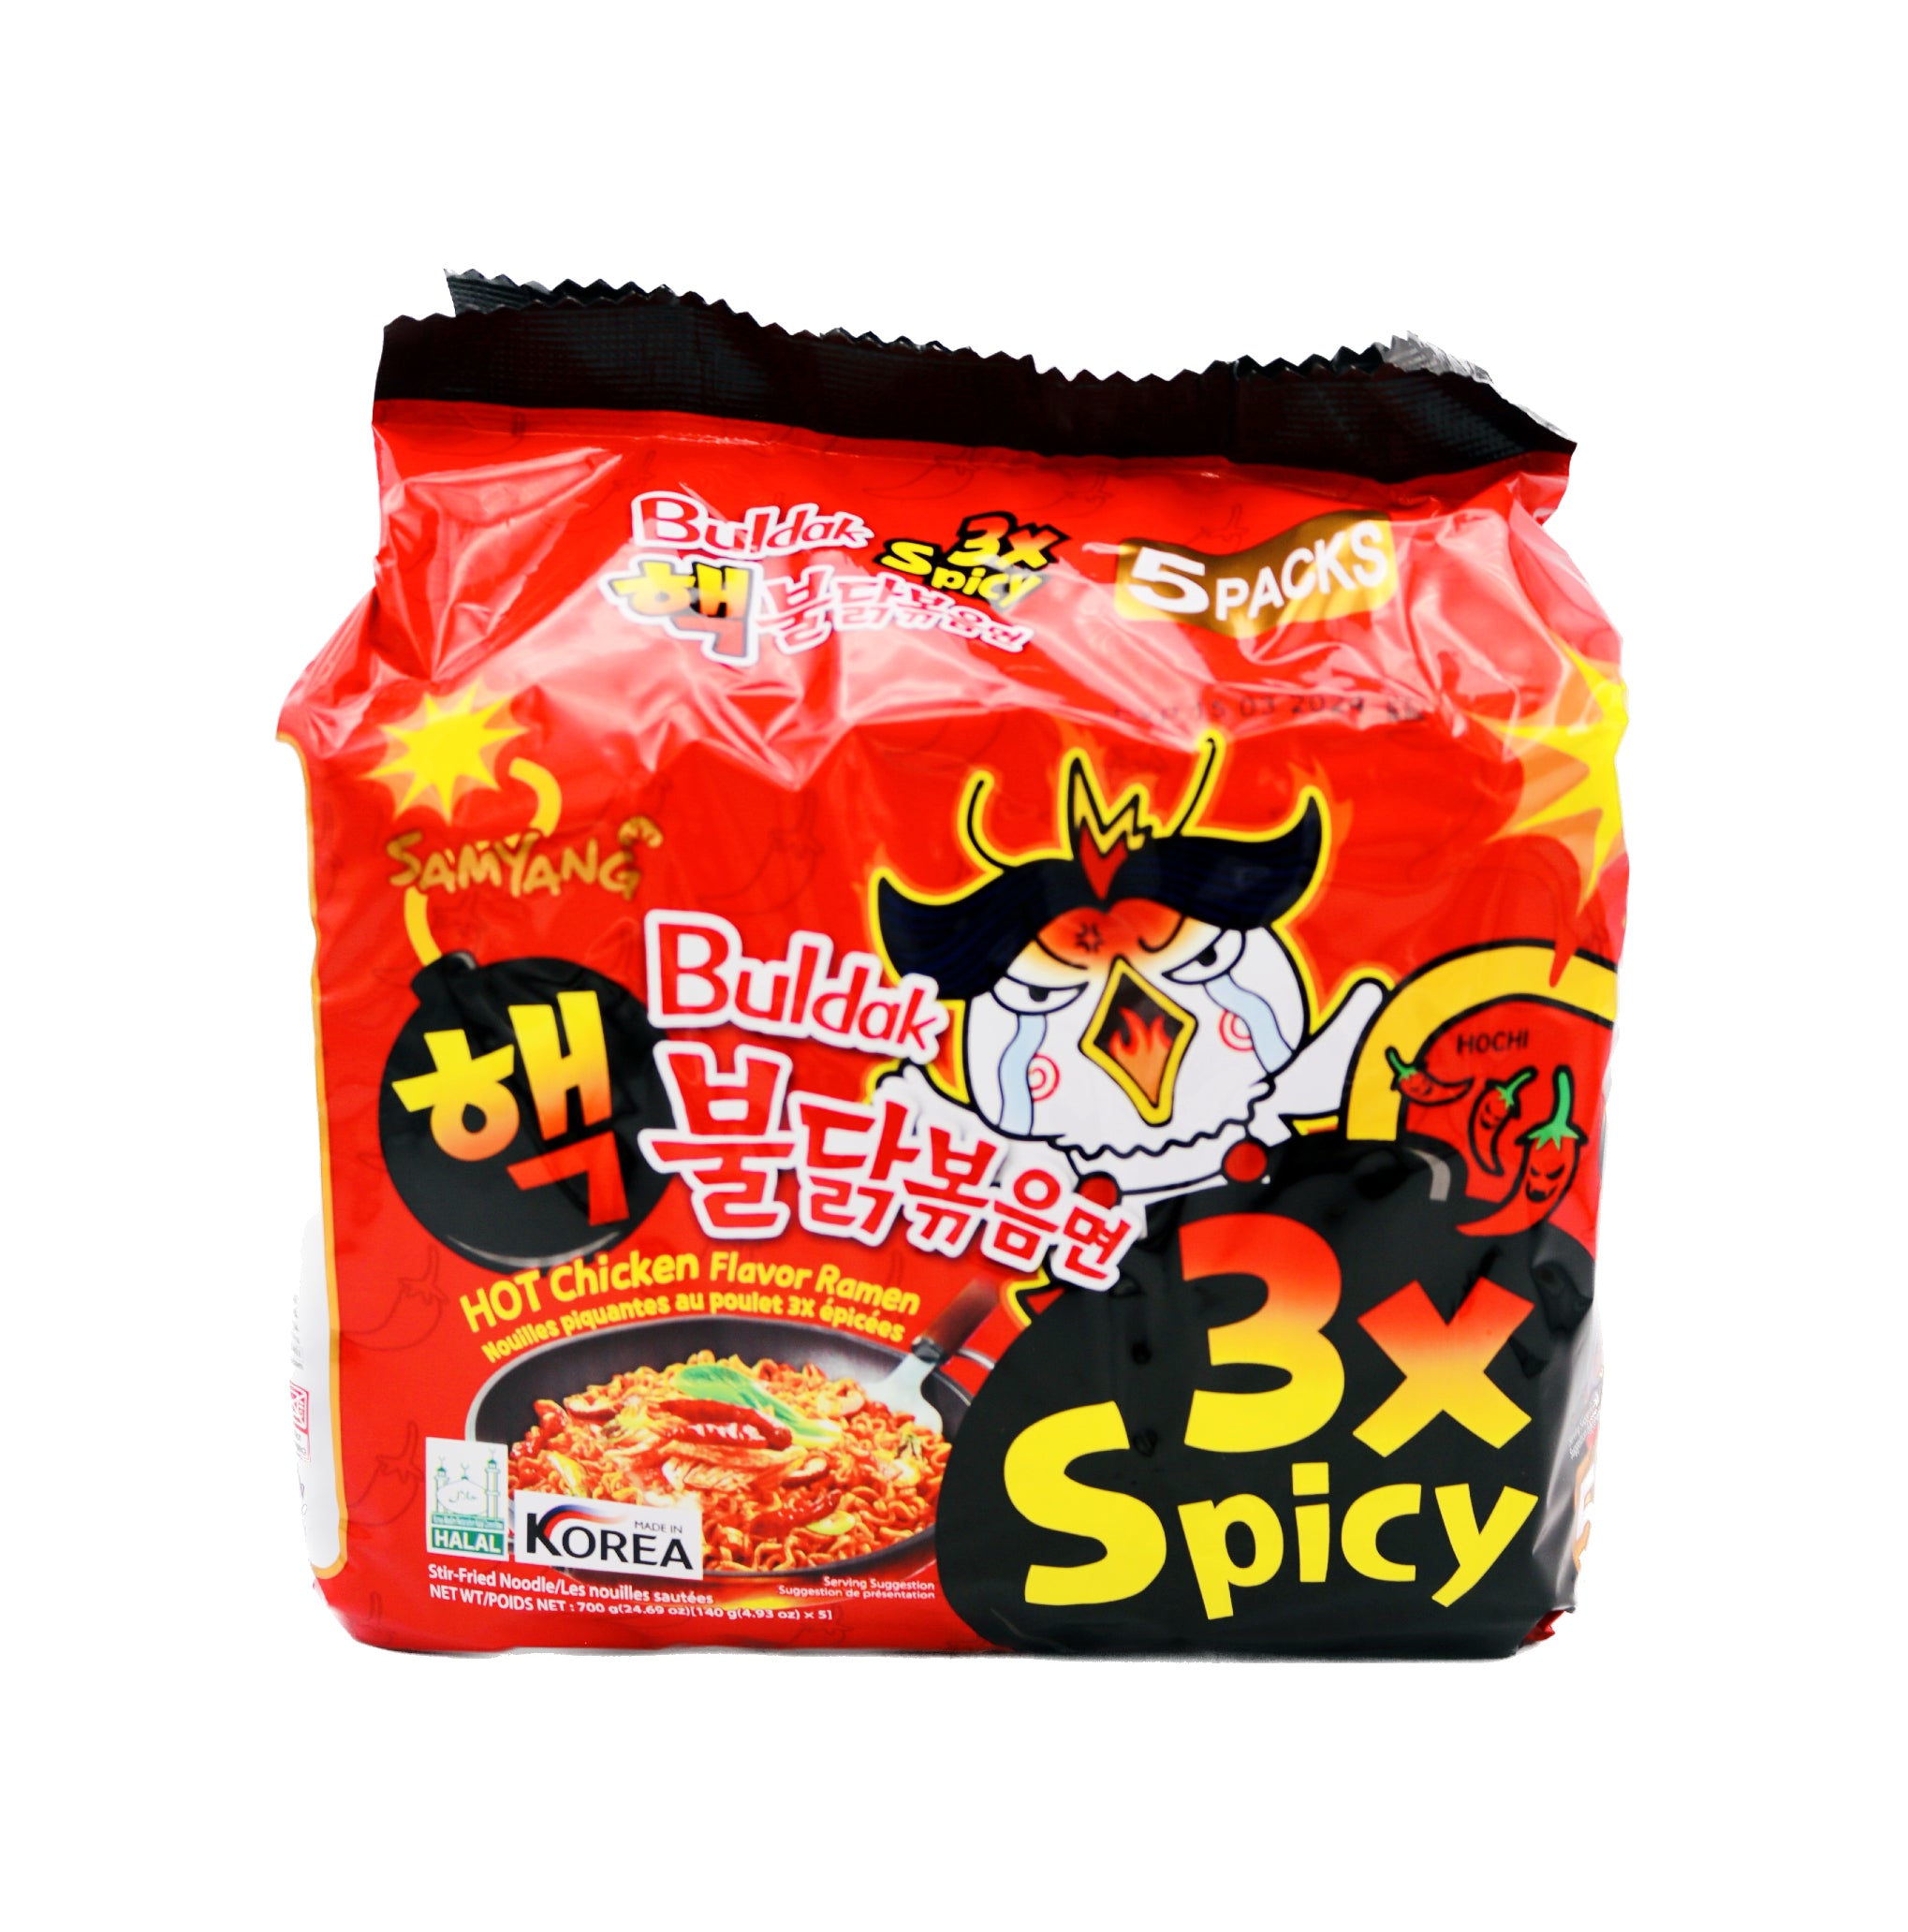 Samyang Hot Chicken Flavor Ramen Stir Fried Noodles Buldak Bokkeum Myun 4.93 oz (5 Pack)